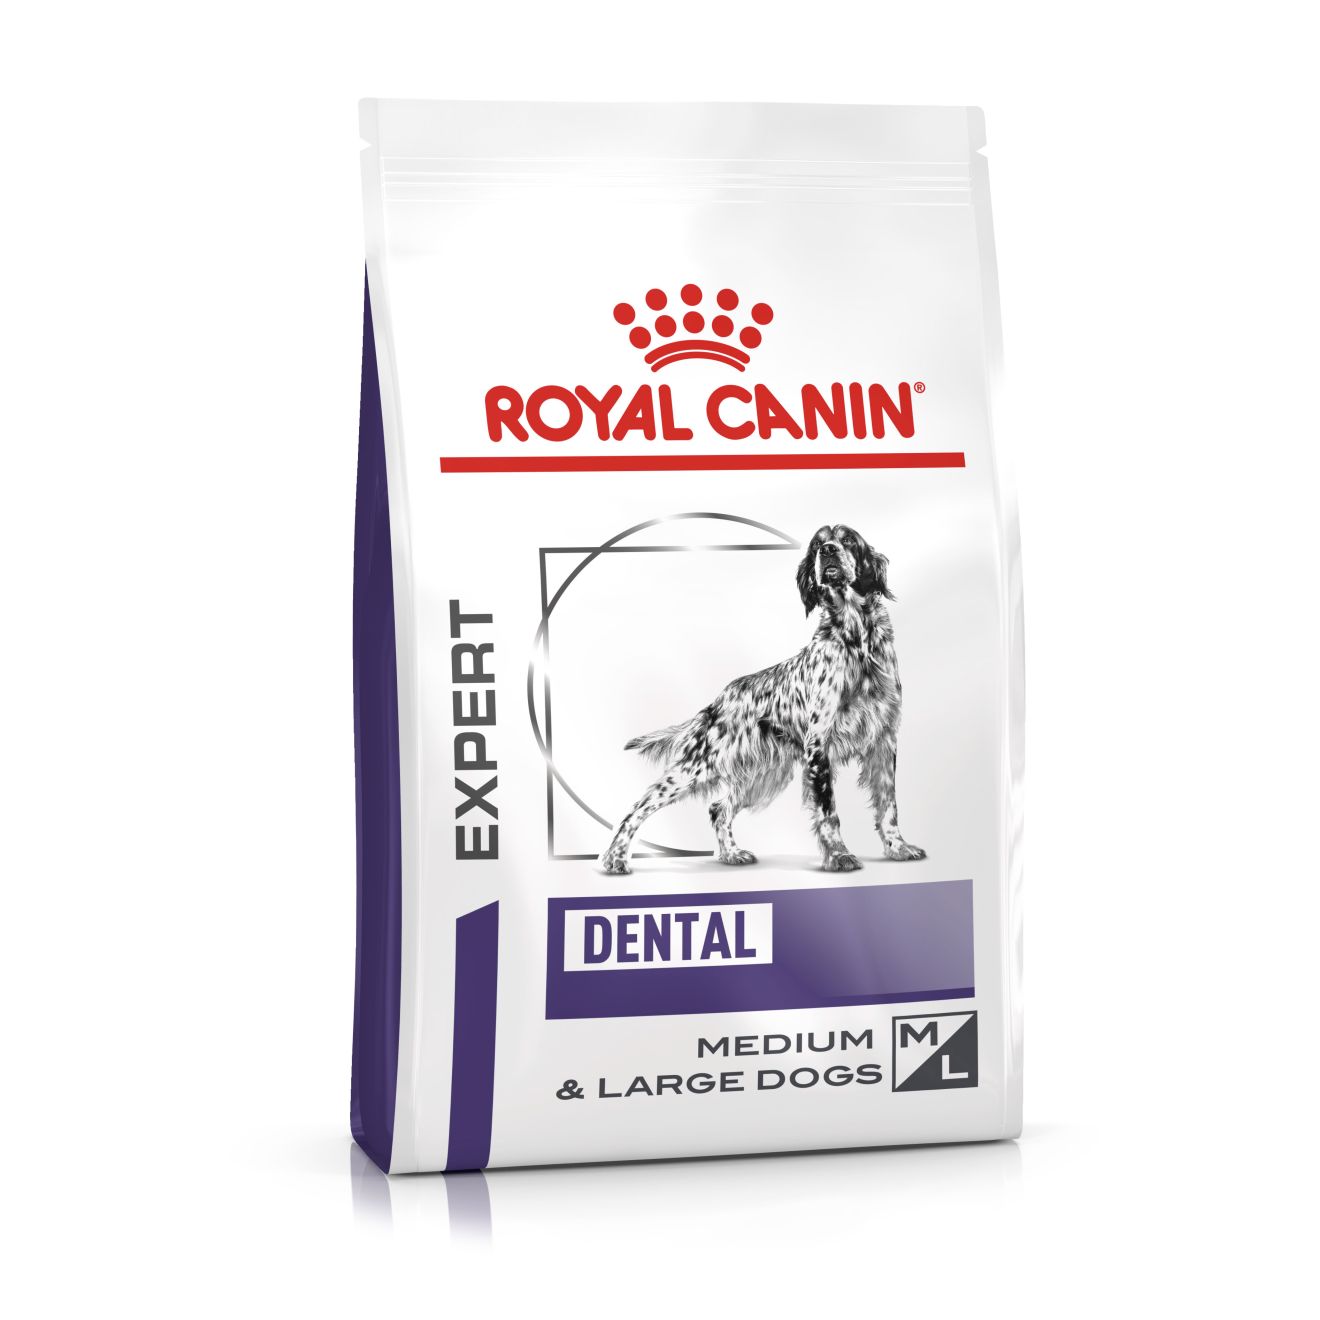 Royal Canin Dental Medium & Large Dogs Trockenfutter Hund 13 kg 